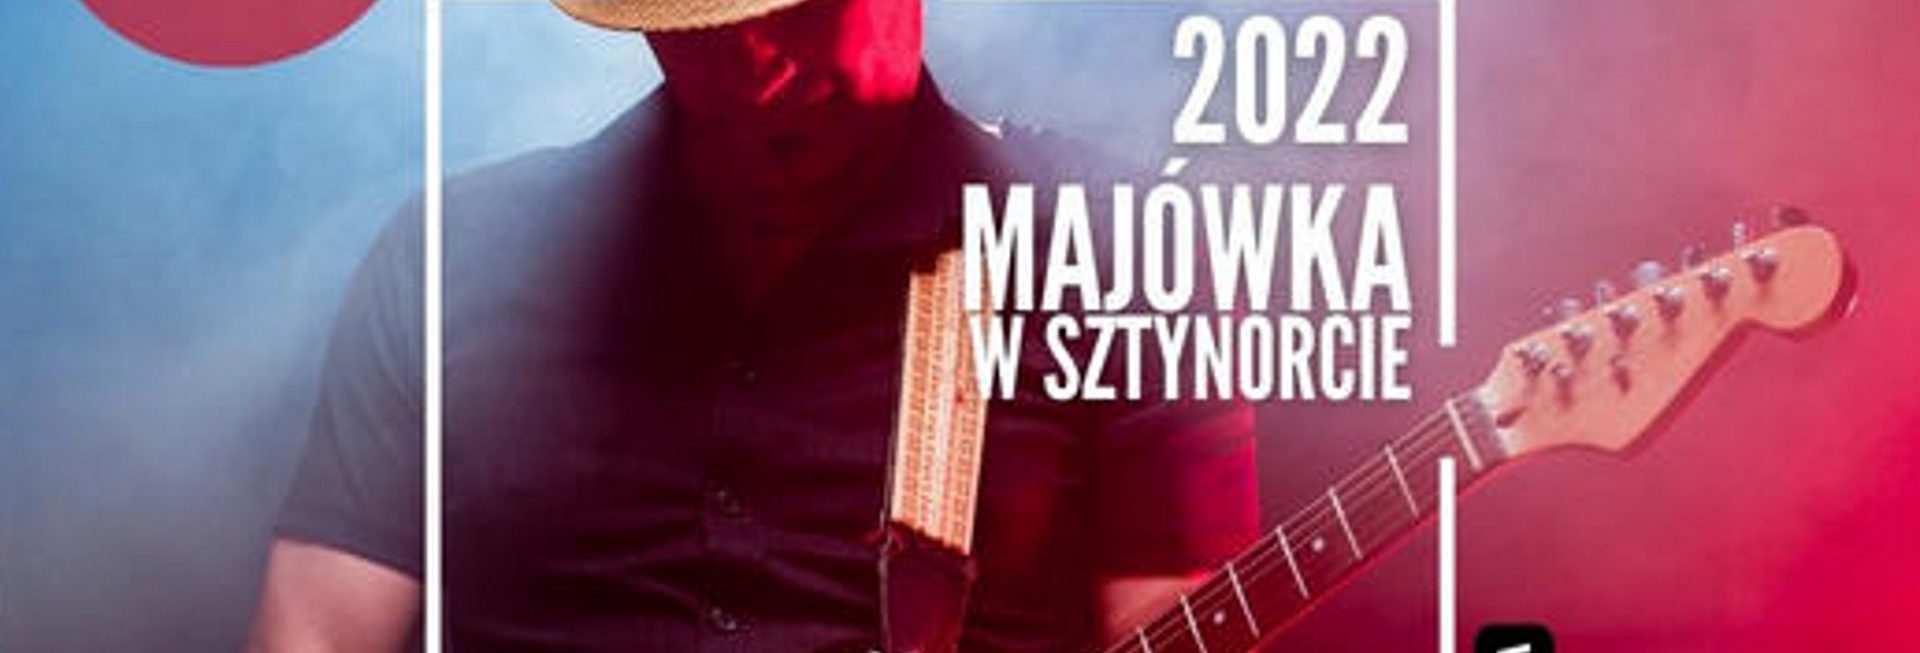 Plakat graficzny zapraszający do Sztynortu na MAJÓWKĘ – Huczne Rozpoczęcie Sezonu Żeglarskiego Sztynort 2022.